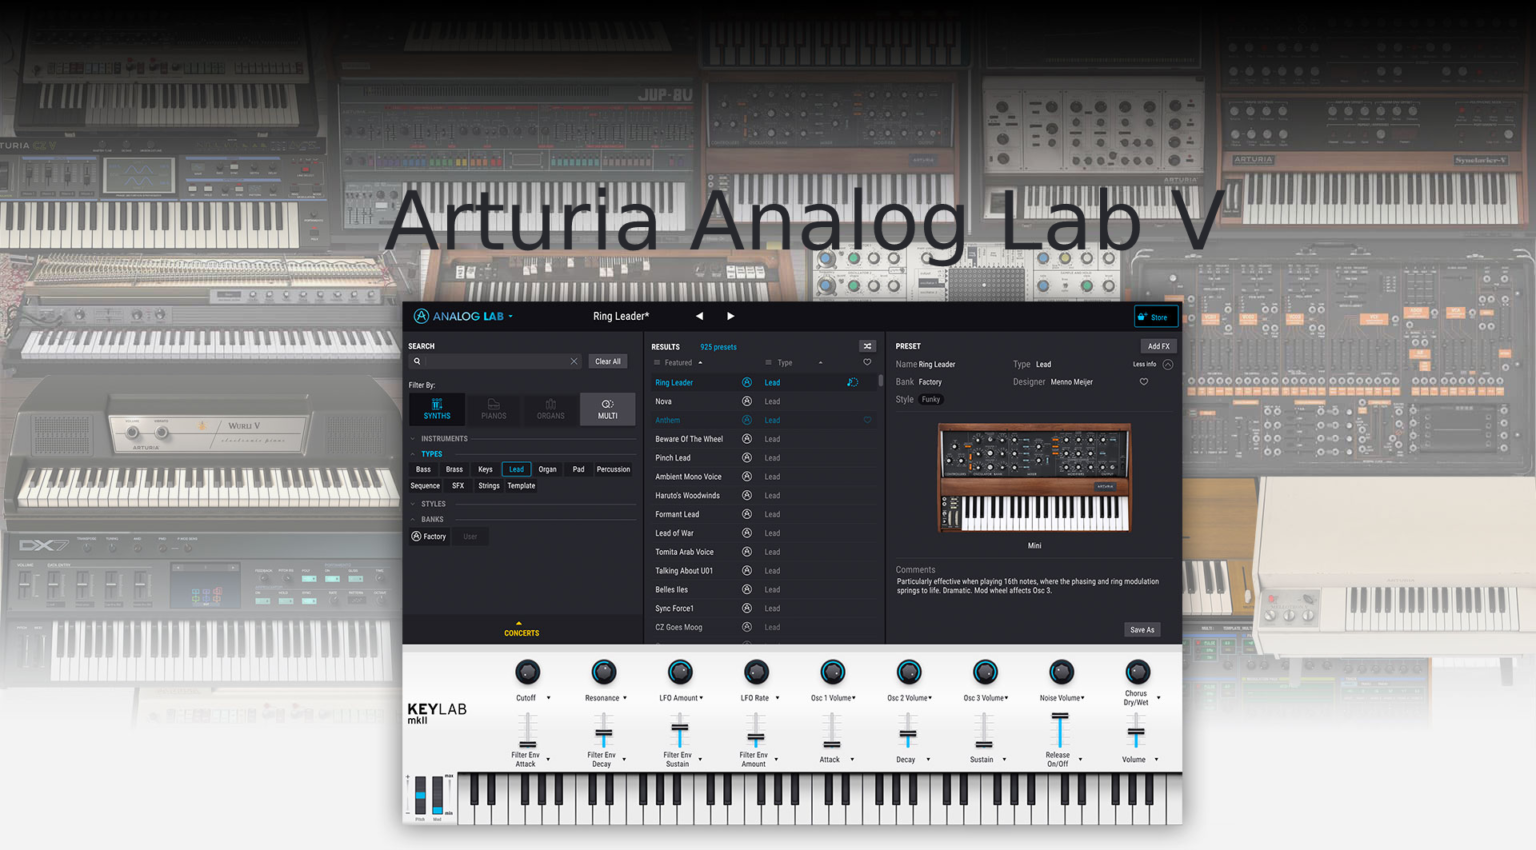 Arturia Analog lab V instal the new for ios